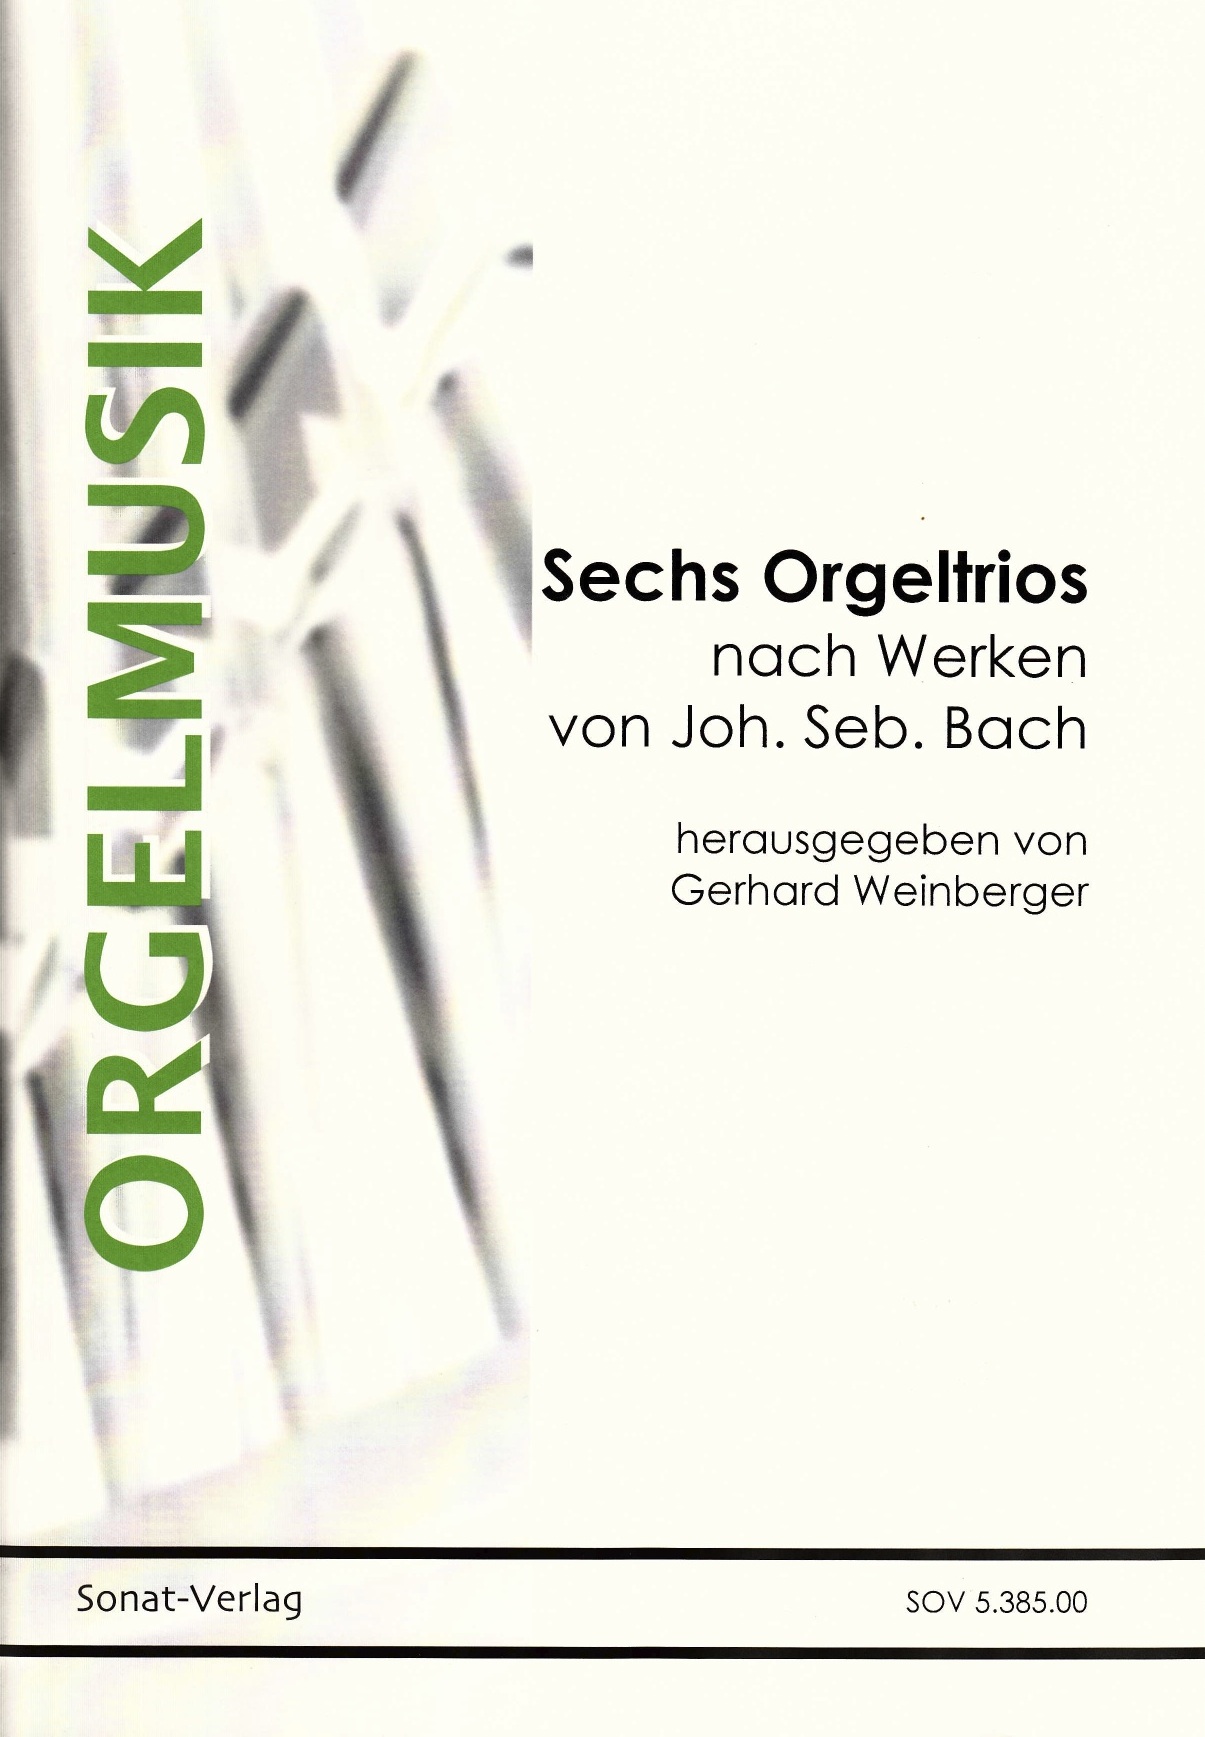 Sechs Orgeltrios nach Werken von J. S. Bach